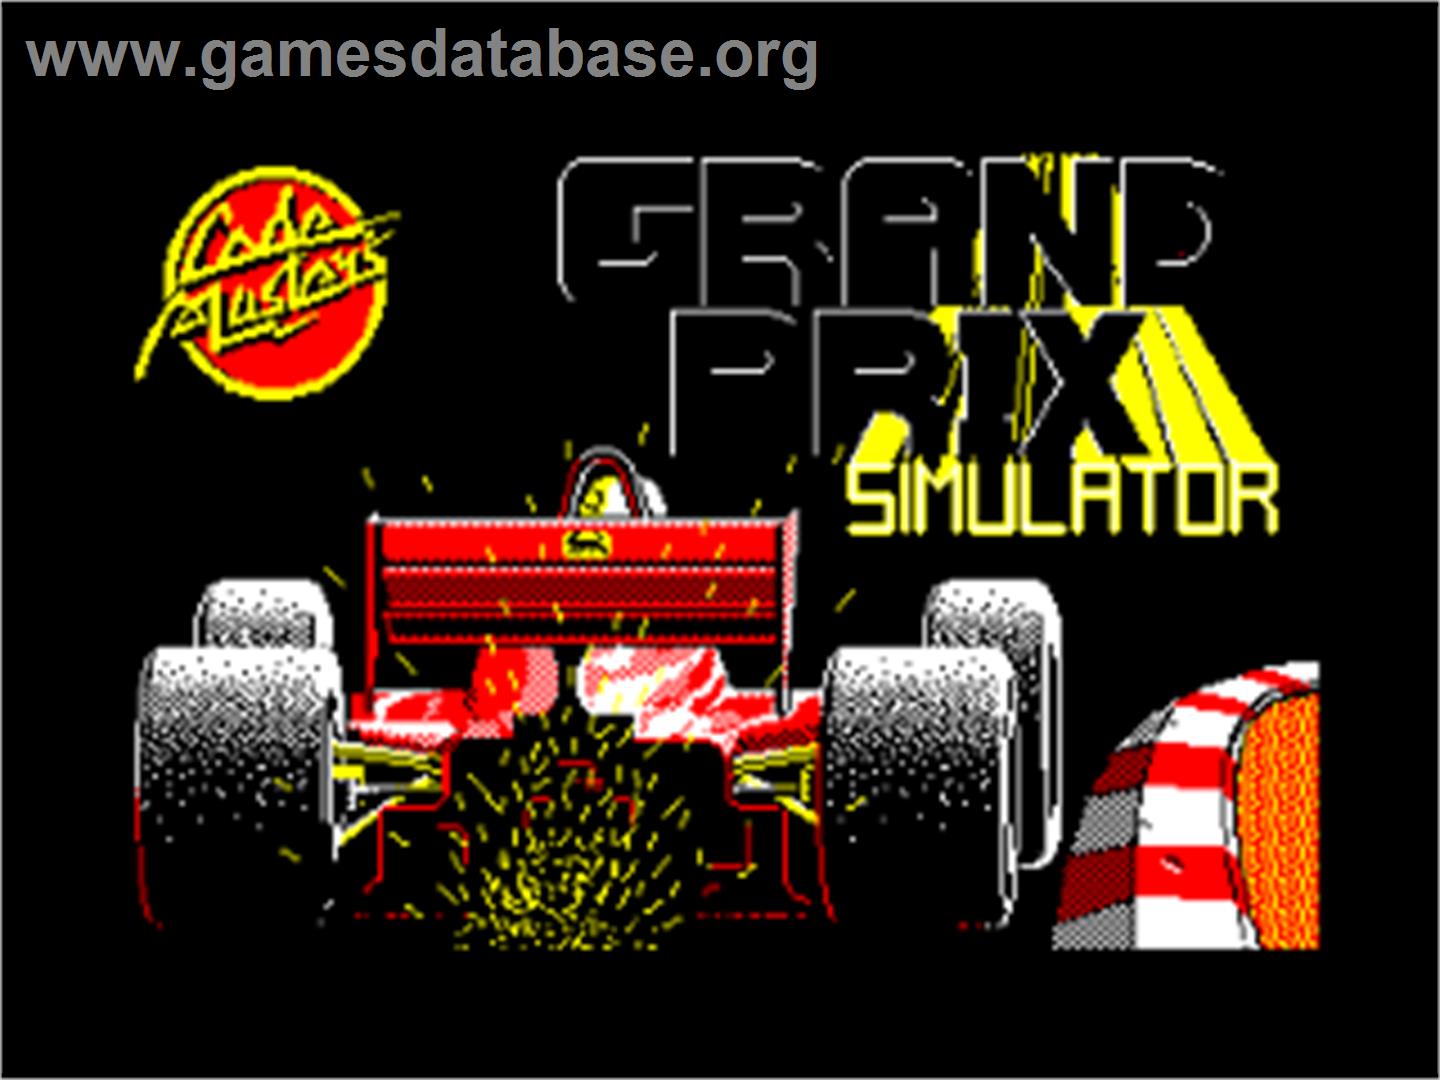 Grand Prix Simulator - Amstrad CPC - Artwork - Title Screen